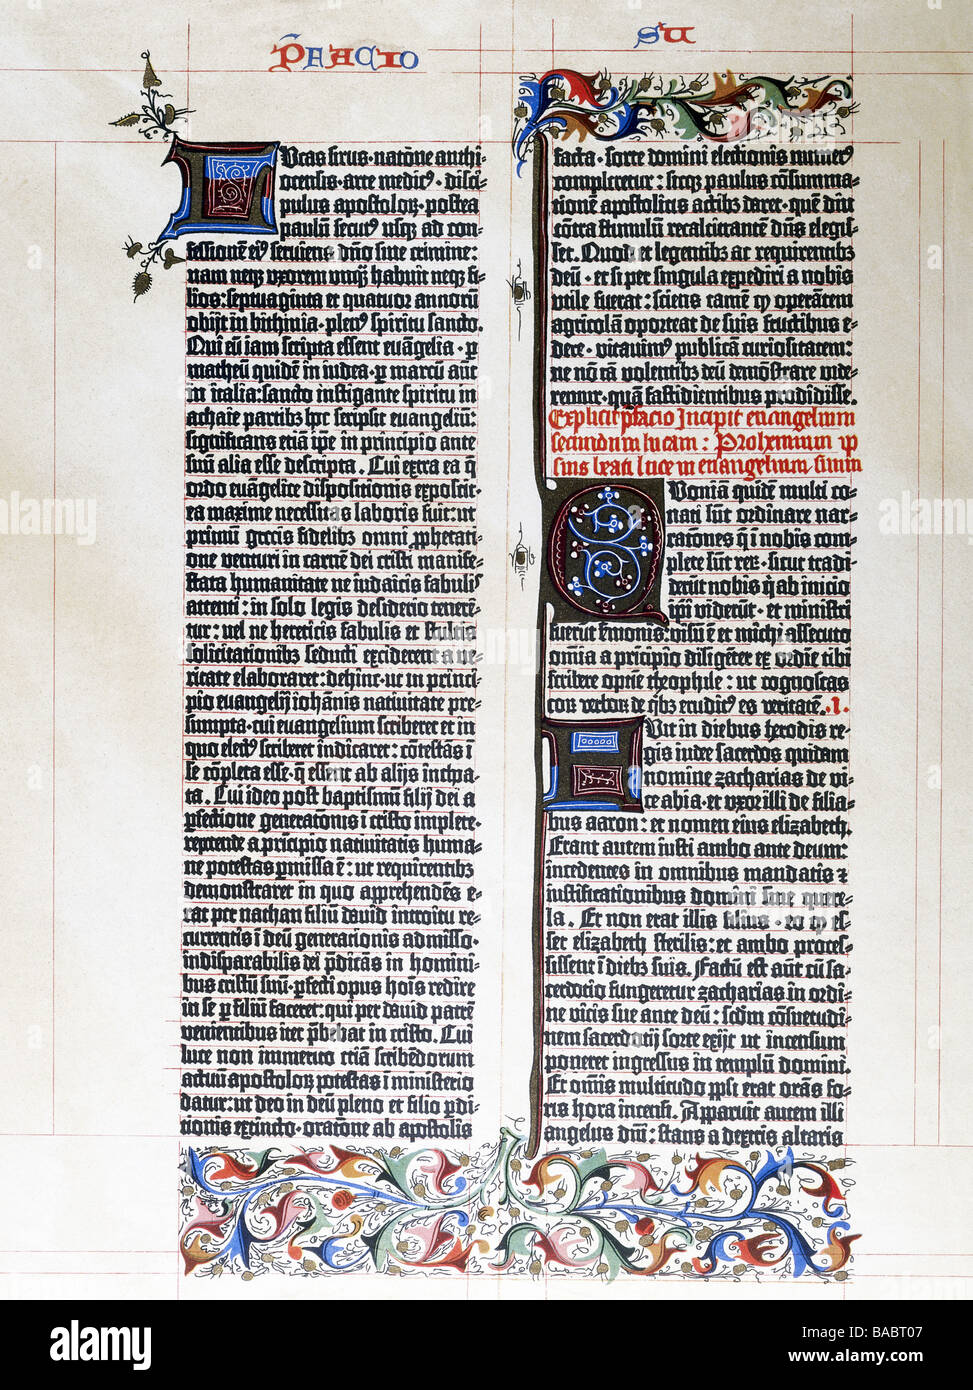 Gutenberg, Johannes Gensfleisch zur Laden zum, circa 1400 - 3.2.1468, orafo e tipografo tedesco, pagina della Bibbia di Gutenberg, Magonza, 1452 - 1455, Foto Stock